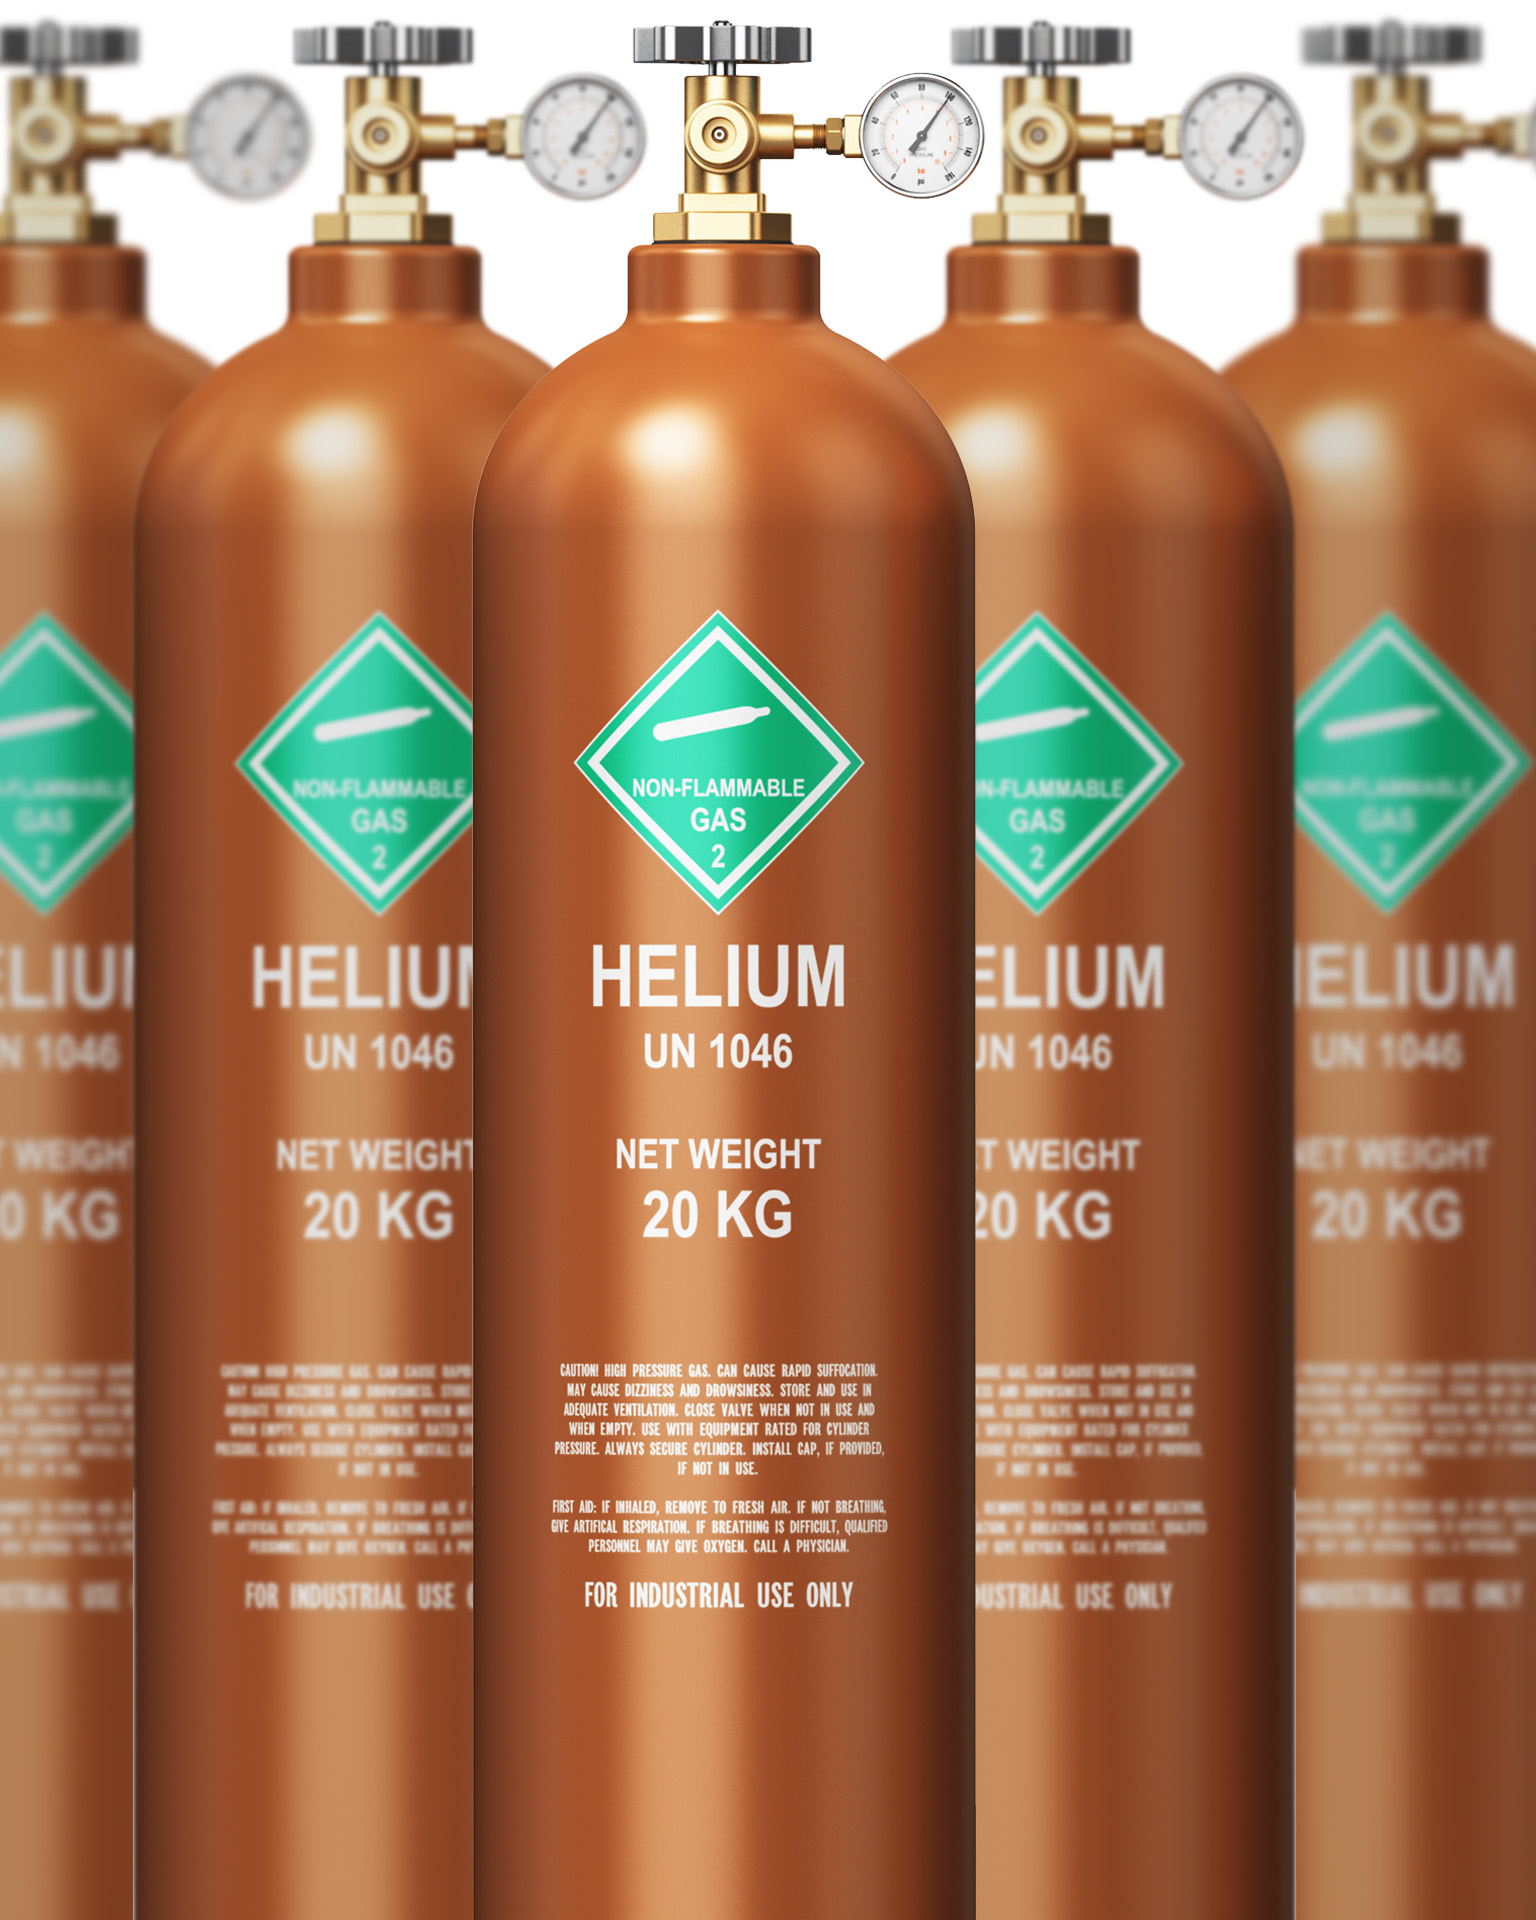 IMG - Web - Buy Helium